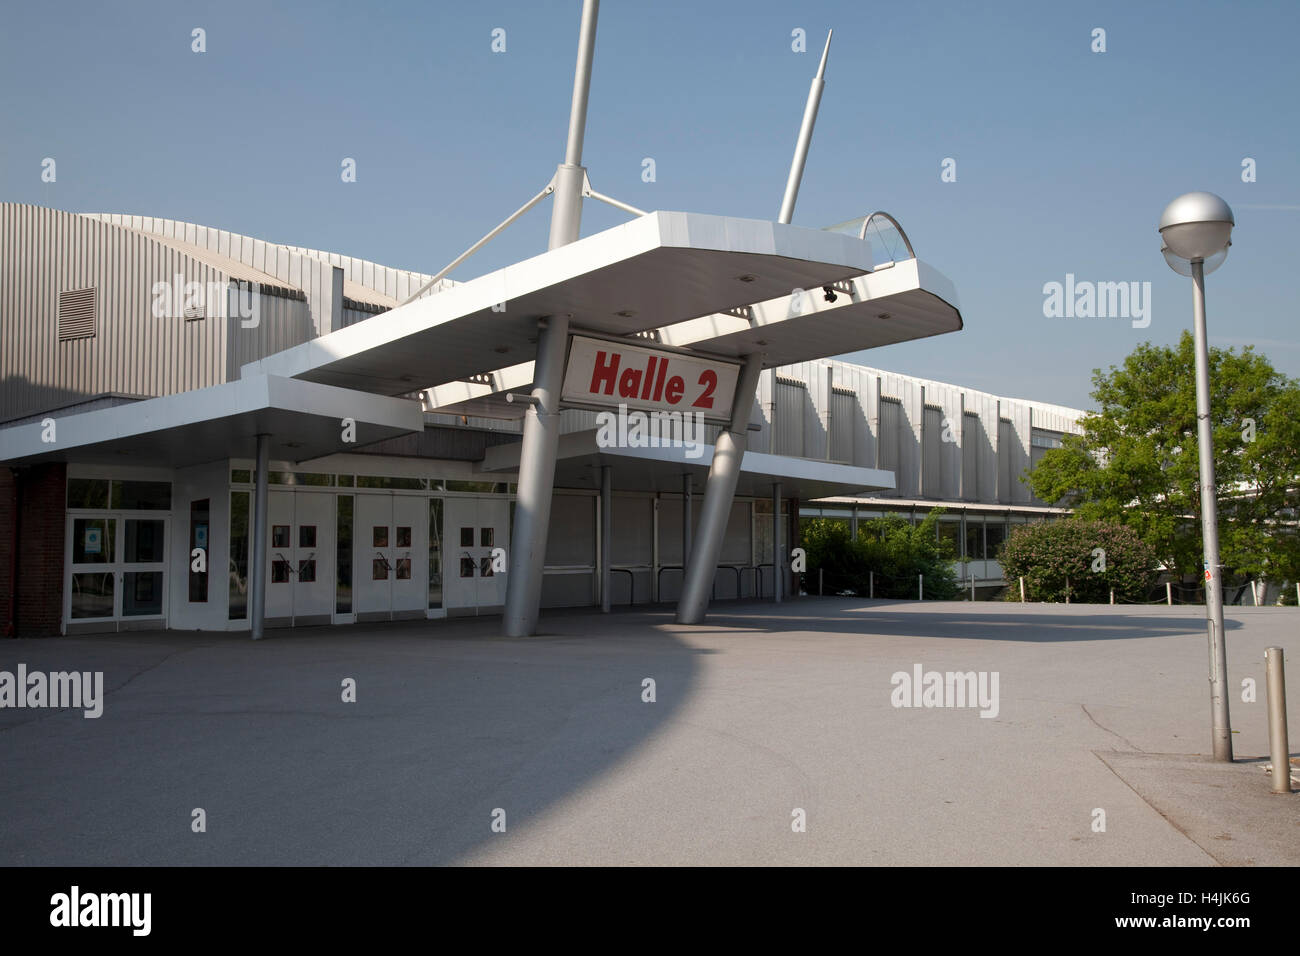 Halle 2, Westfalenhallen Handel Messezentrum, Dortmund, Ruhrgebiet,  Nordrhein-Westfalen Stockfotografie - Alamy